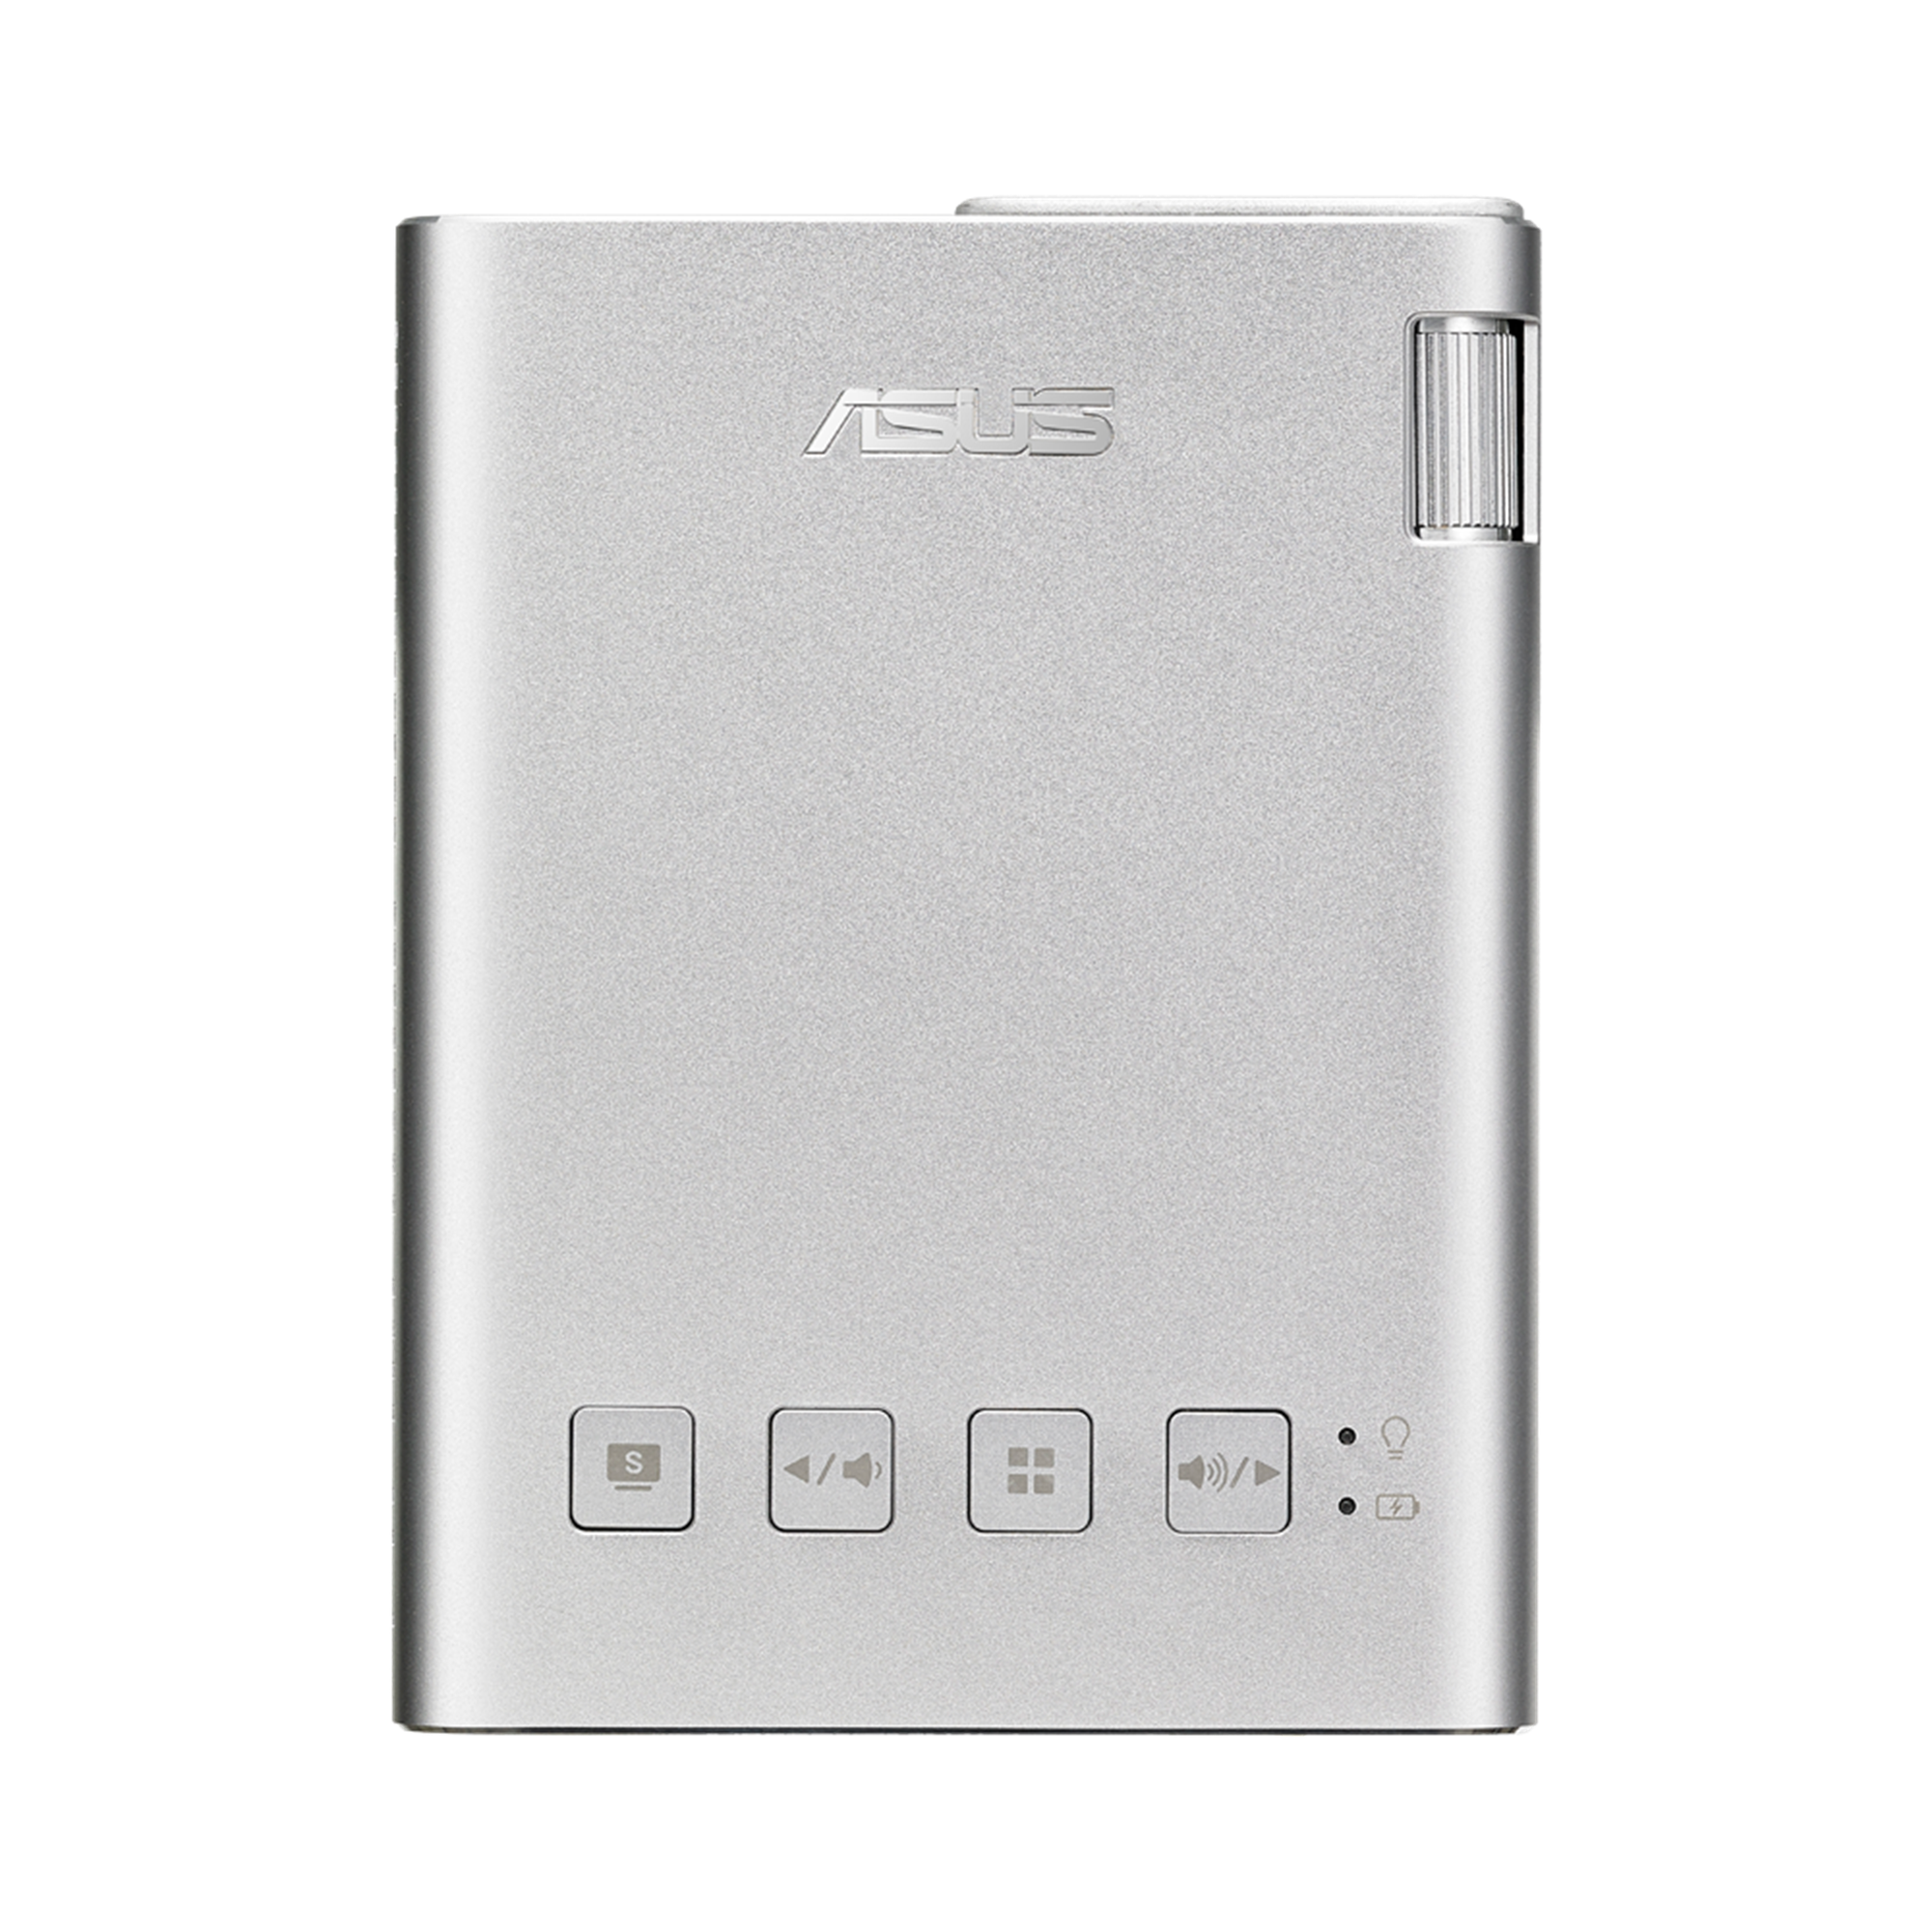 ASUS zenbeamE1 モバイル プロジェクター